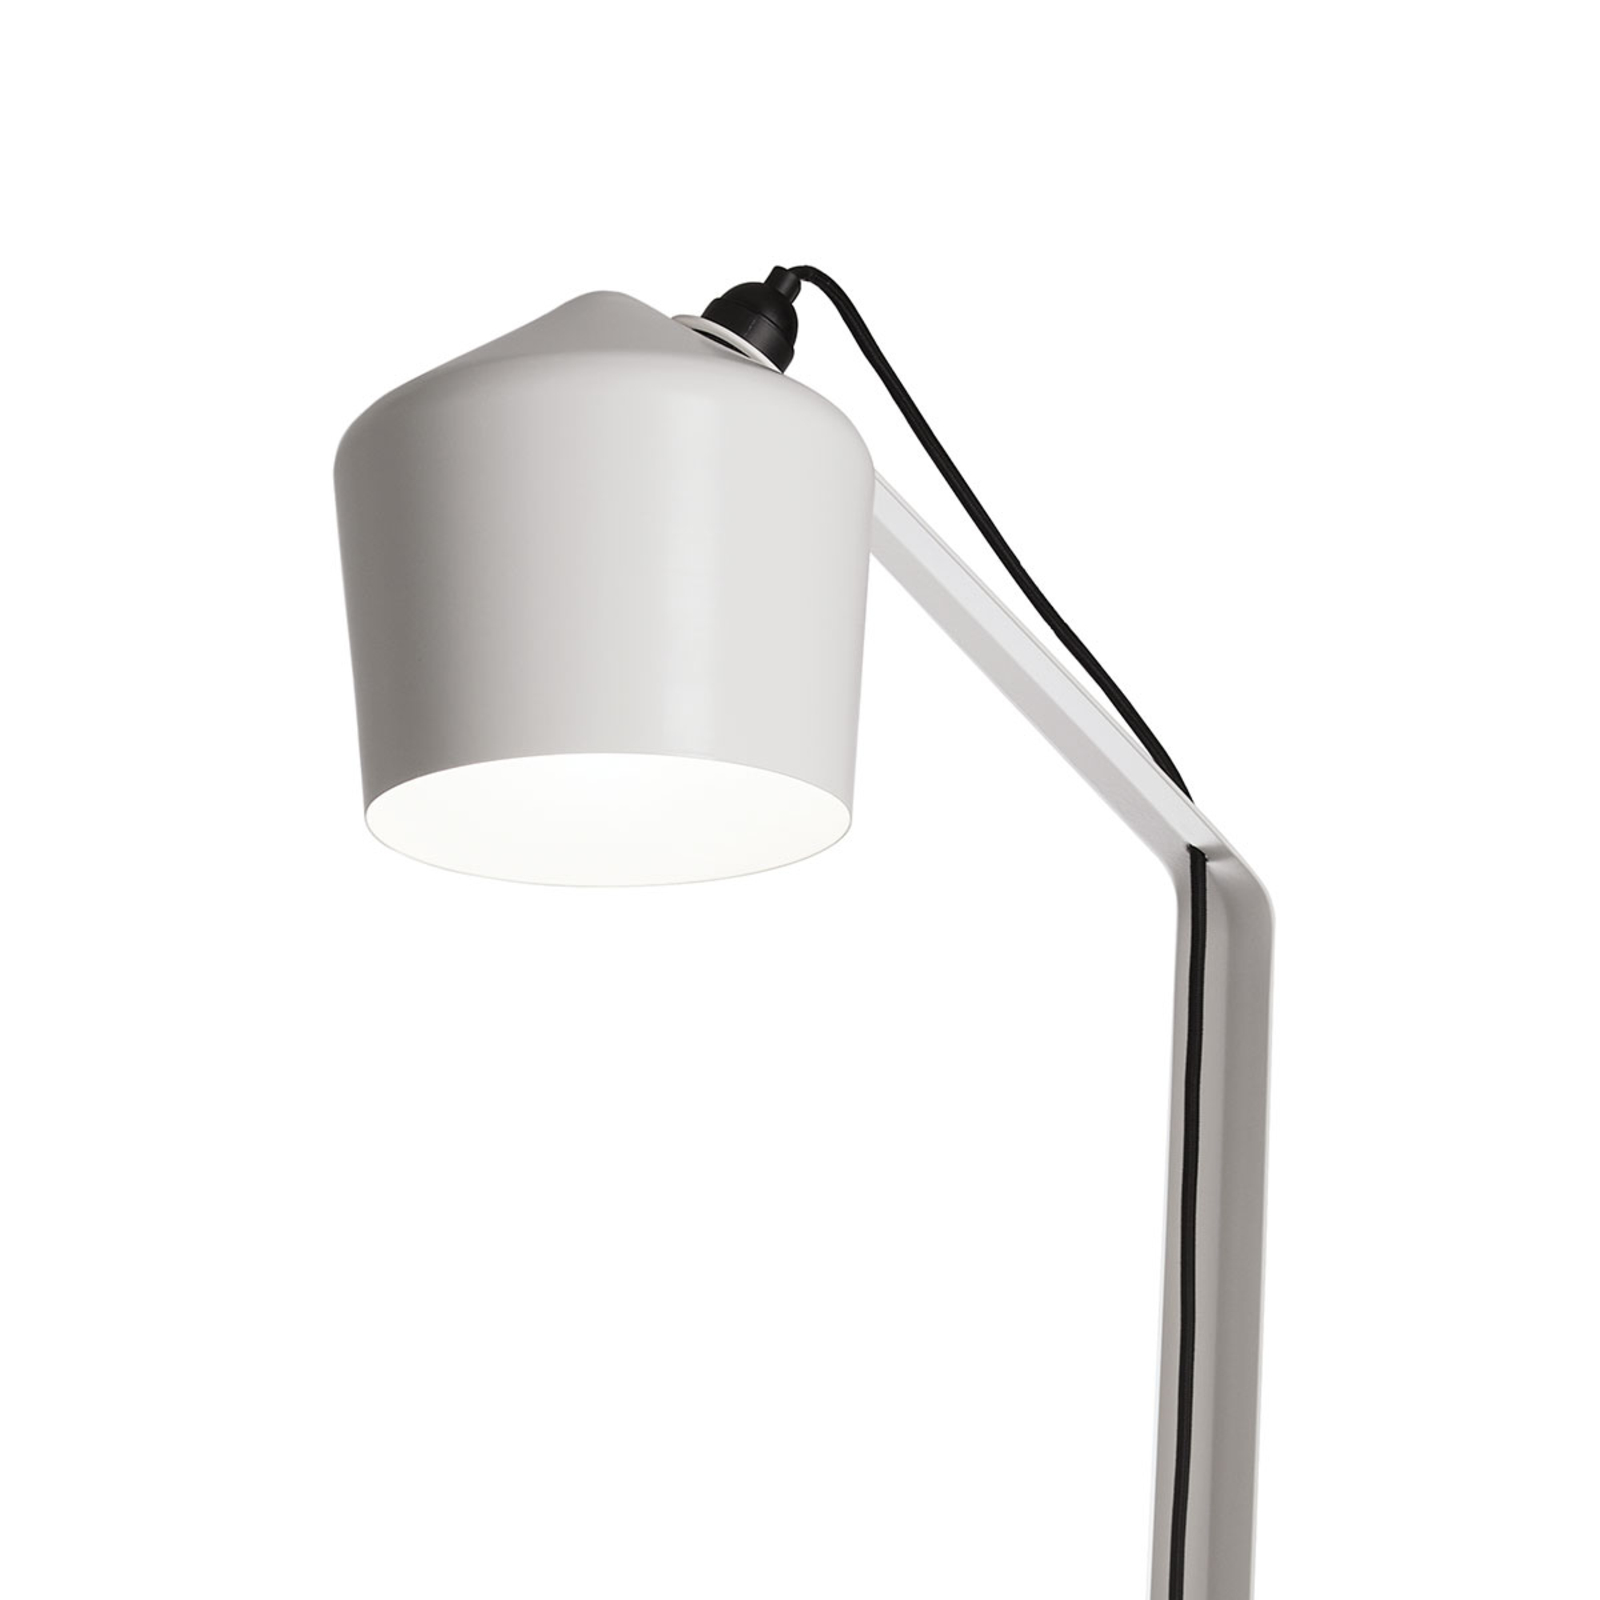 Designová stojací lampa Innolux Pasila bílá